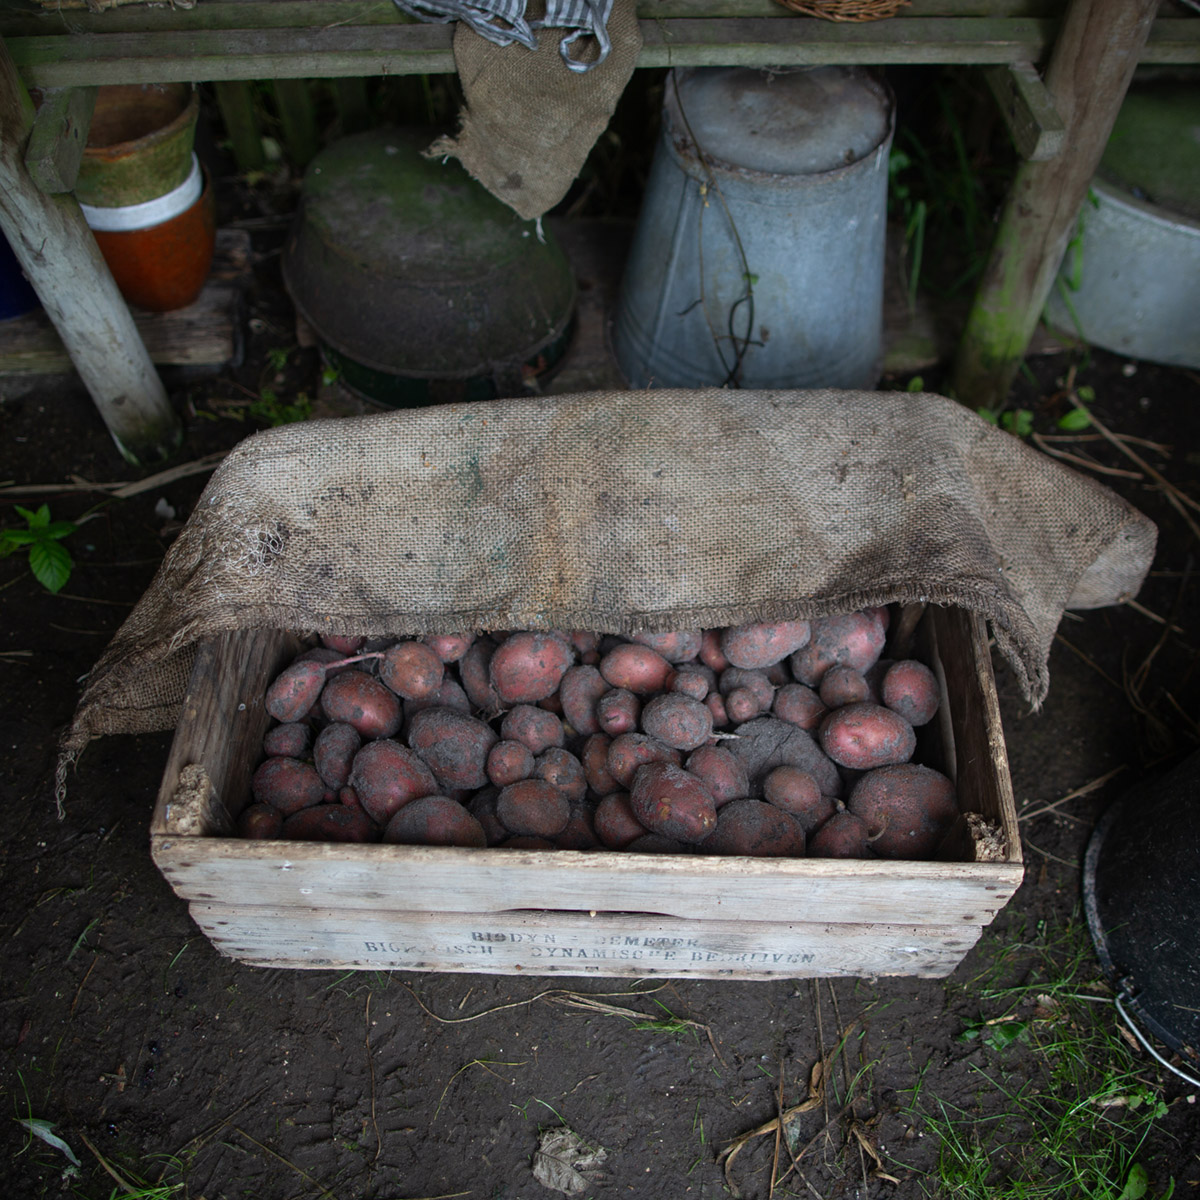 Aardappels liggen knus onder een jute zak